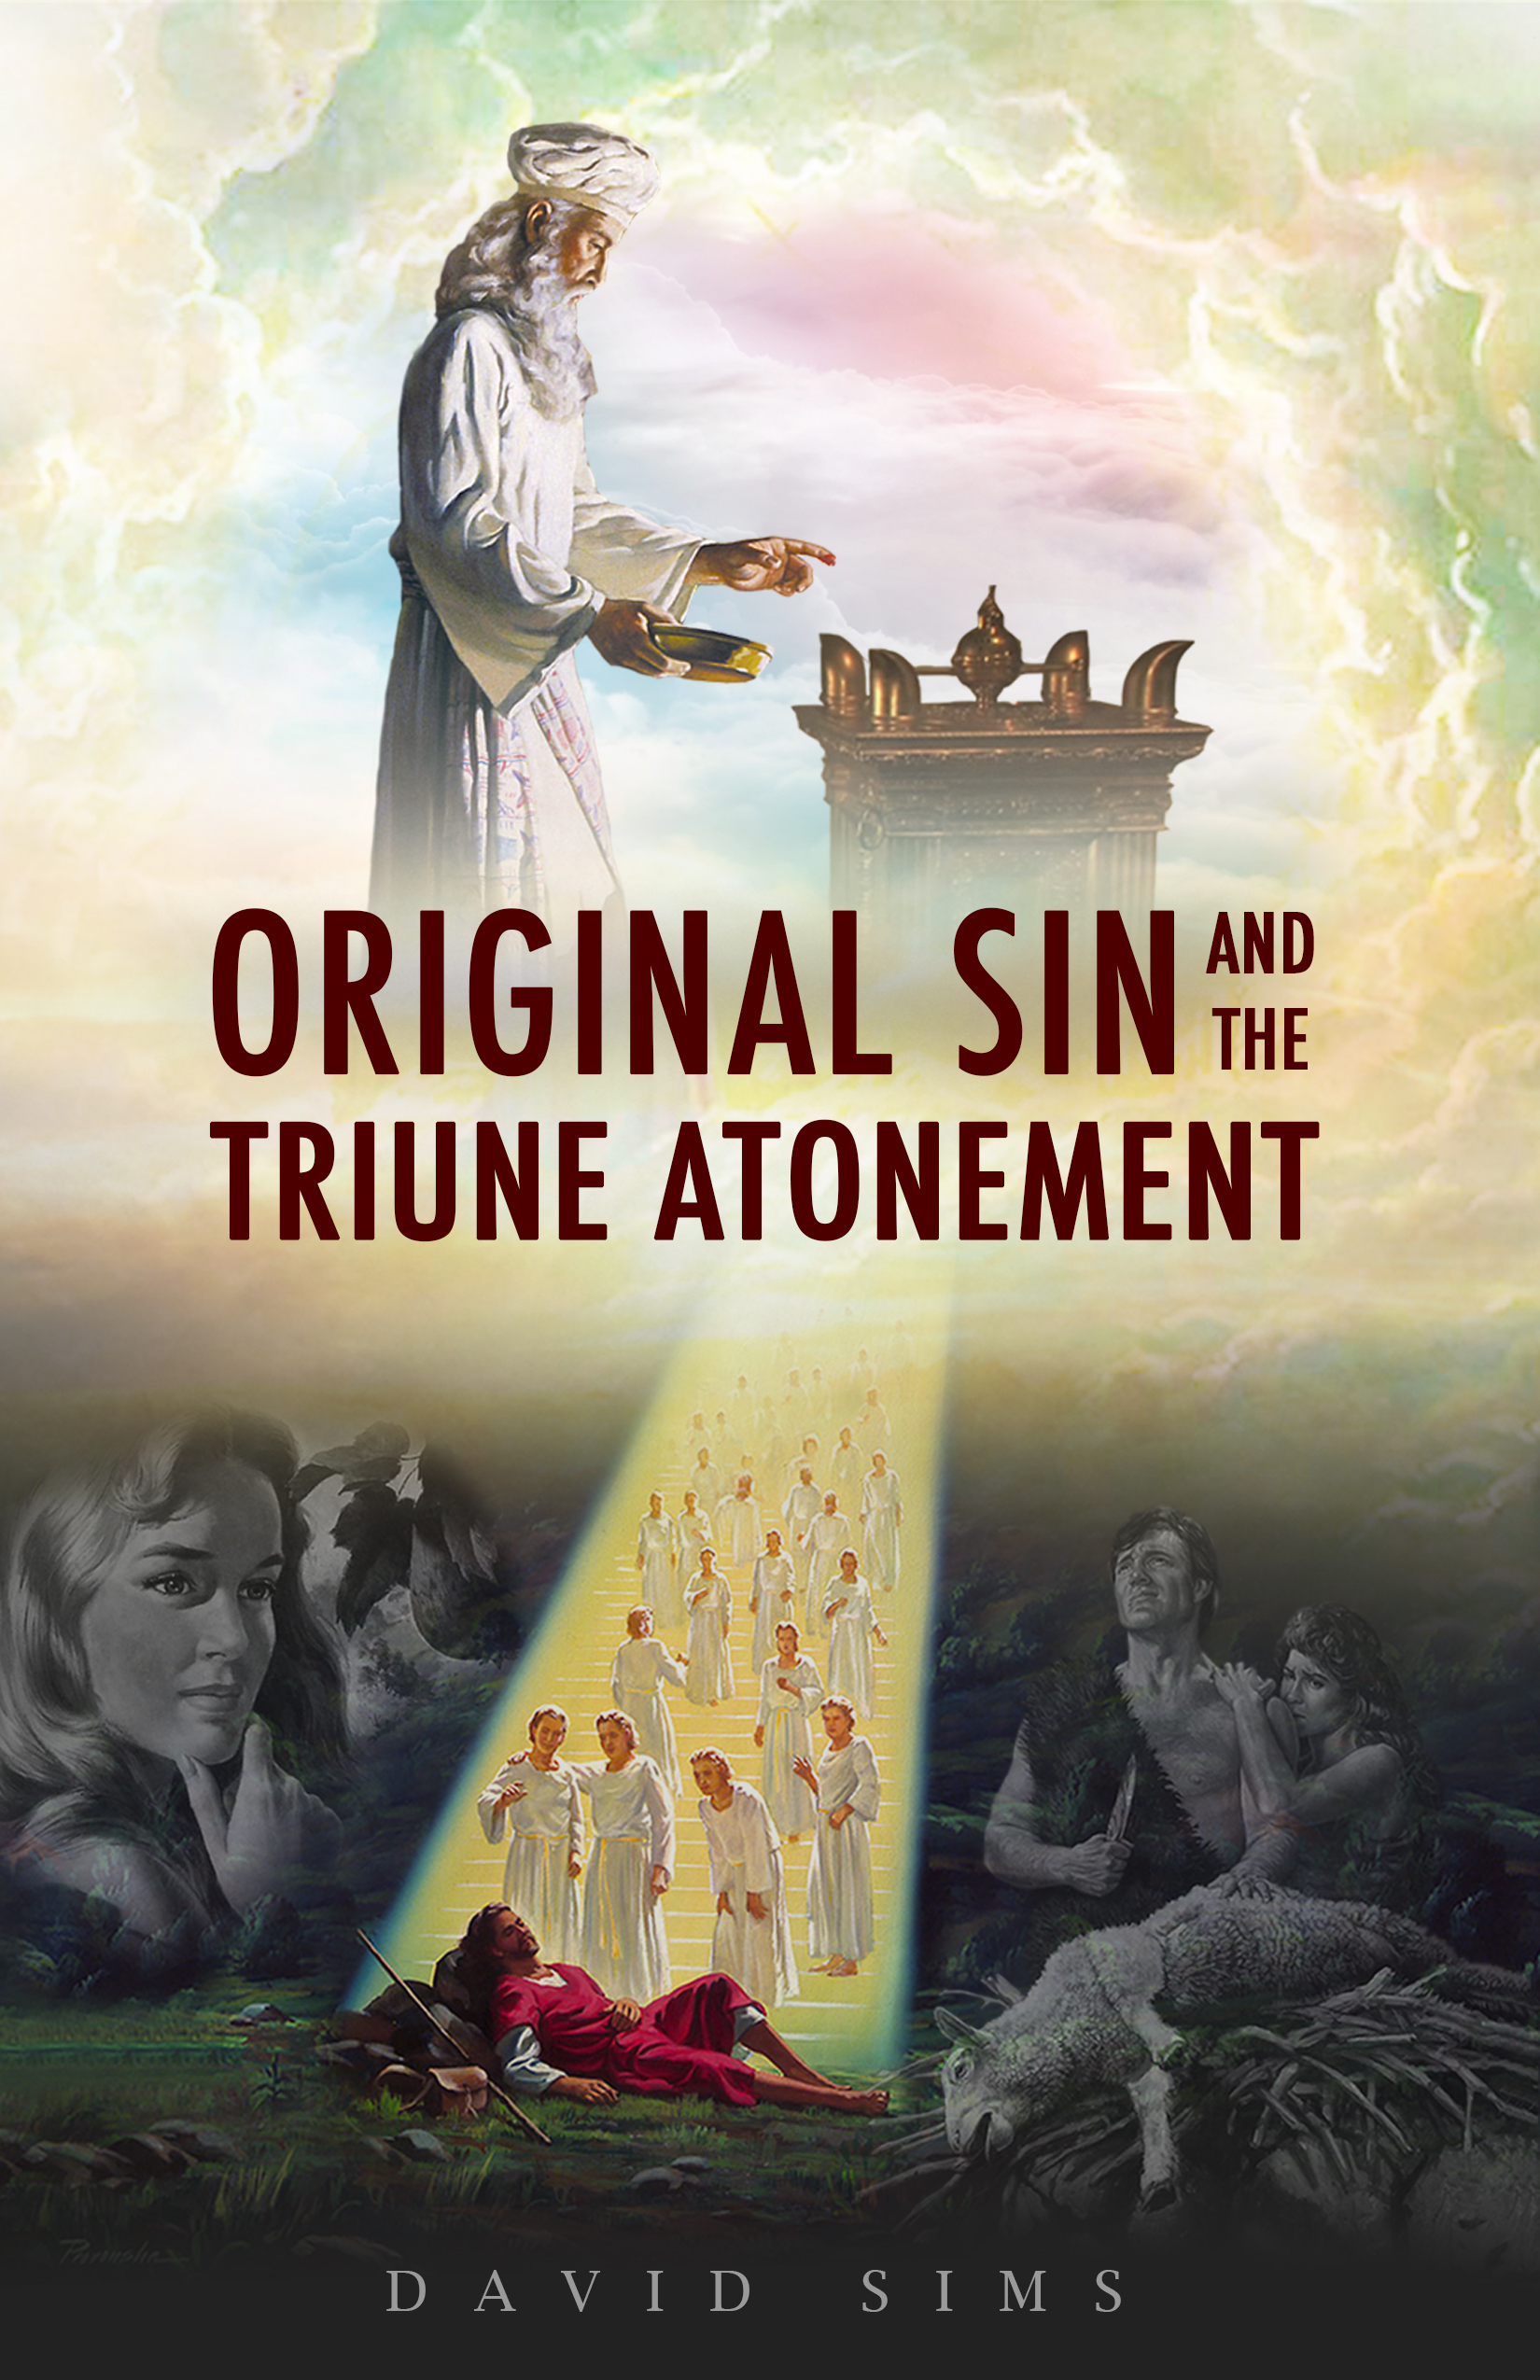 Original Sin and the Triune Atonement